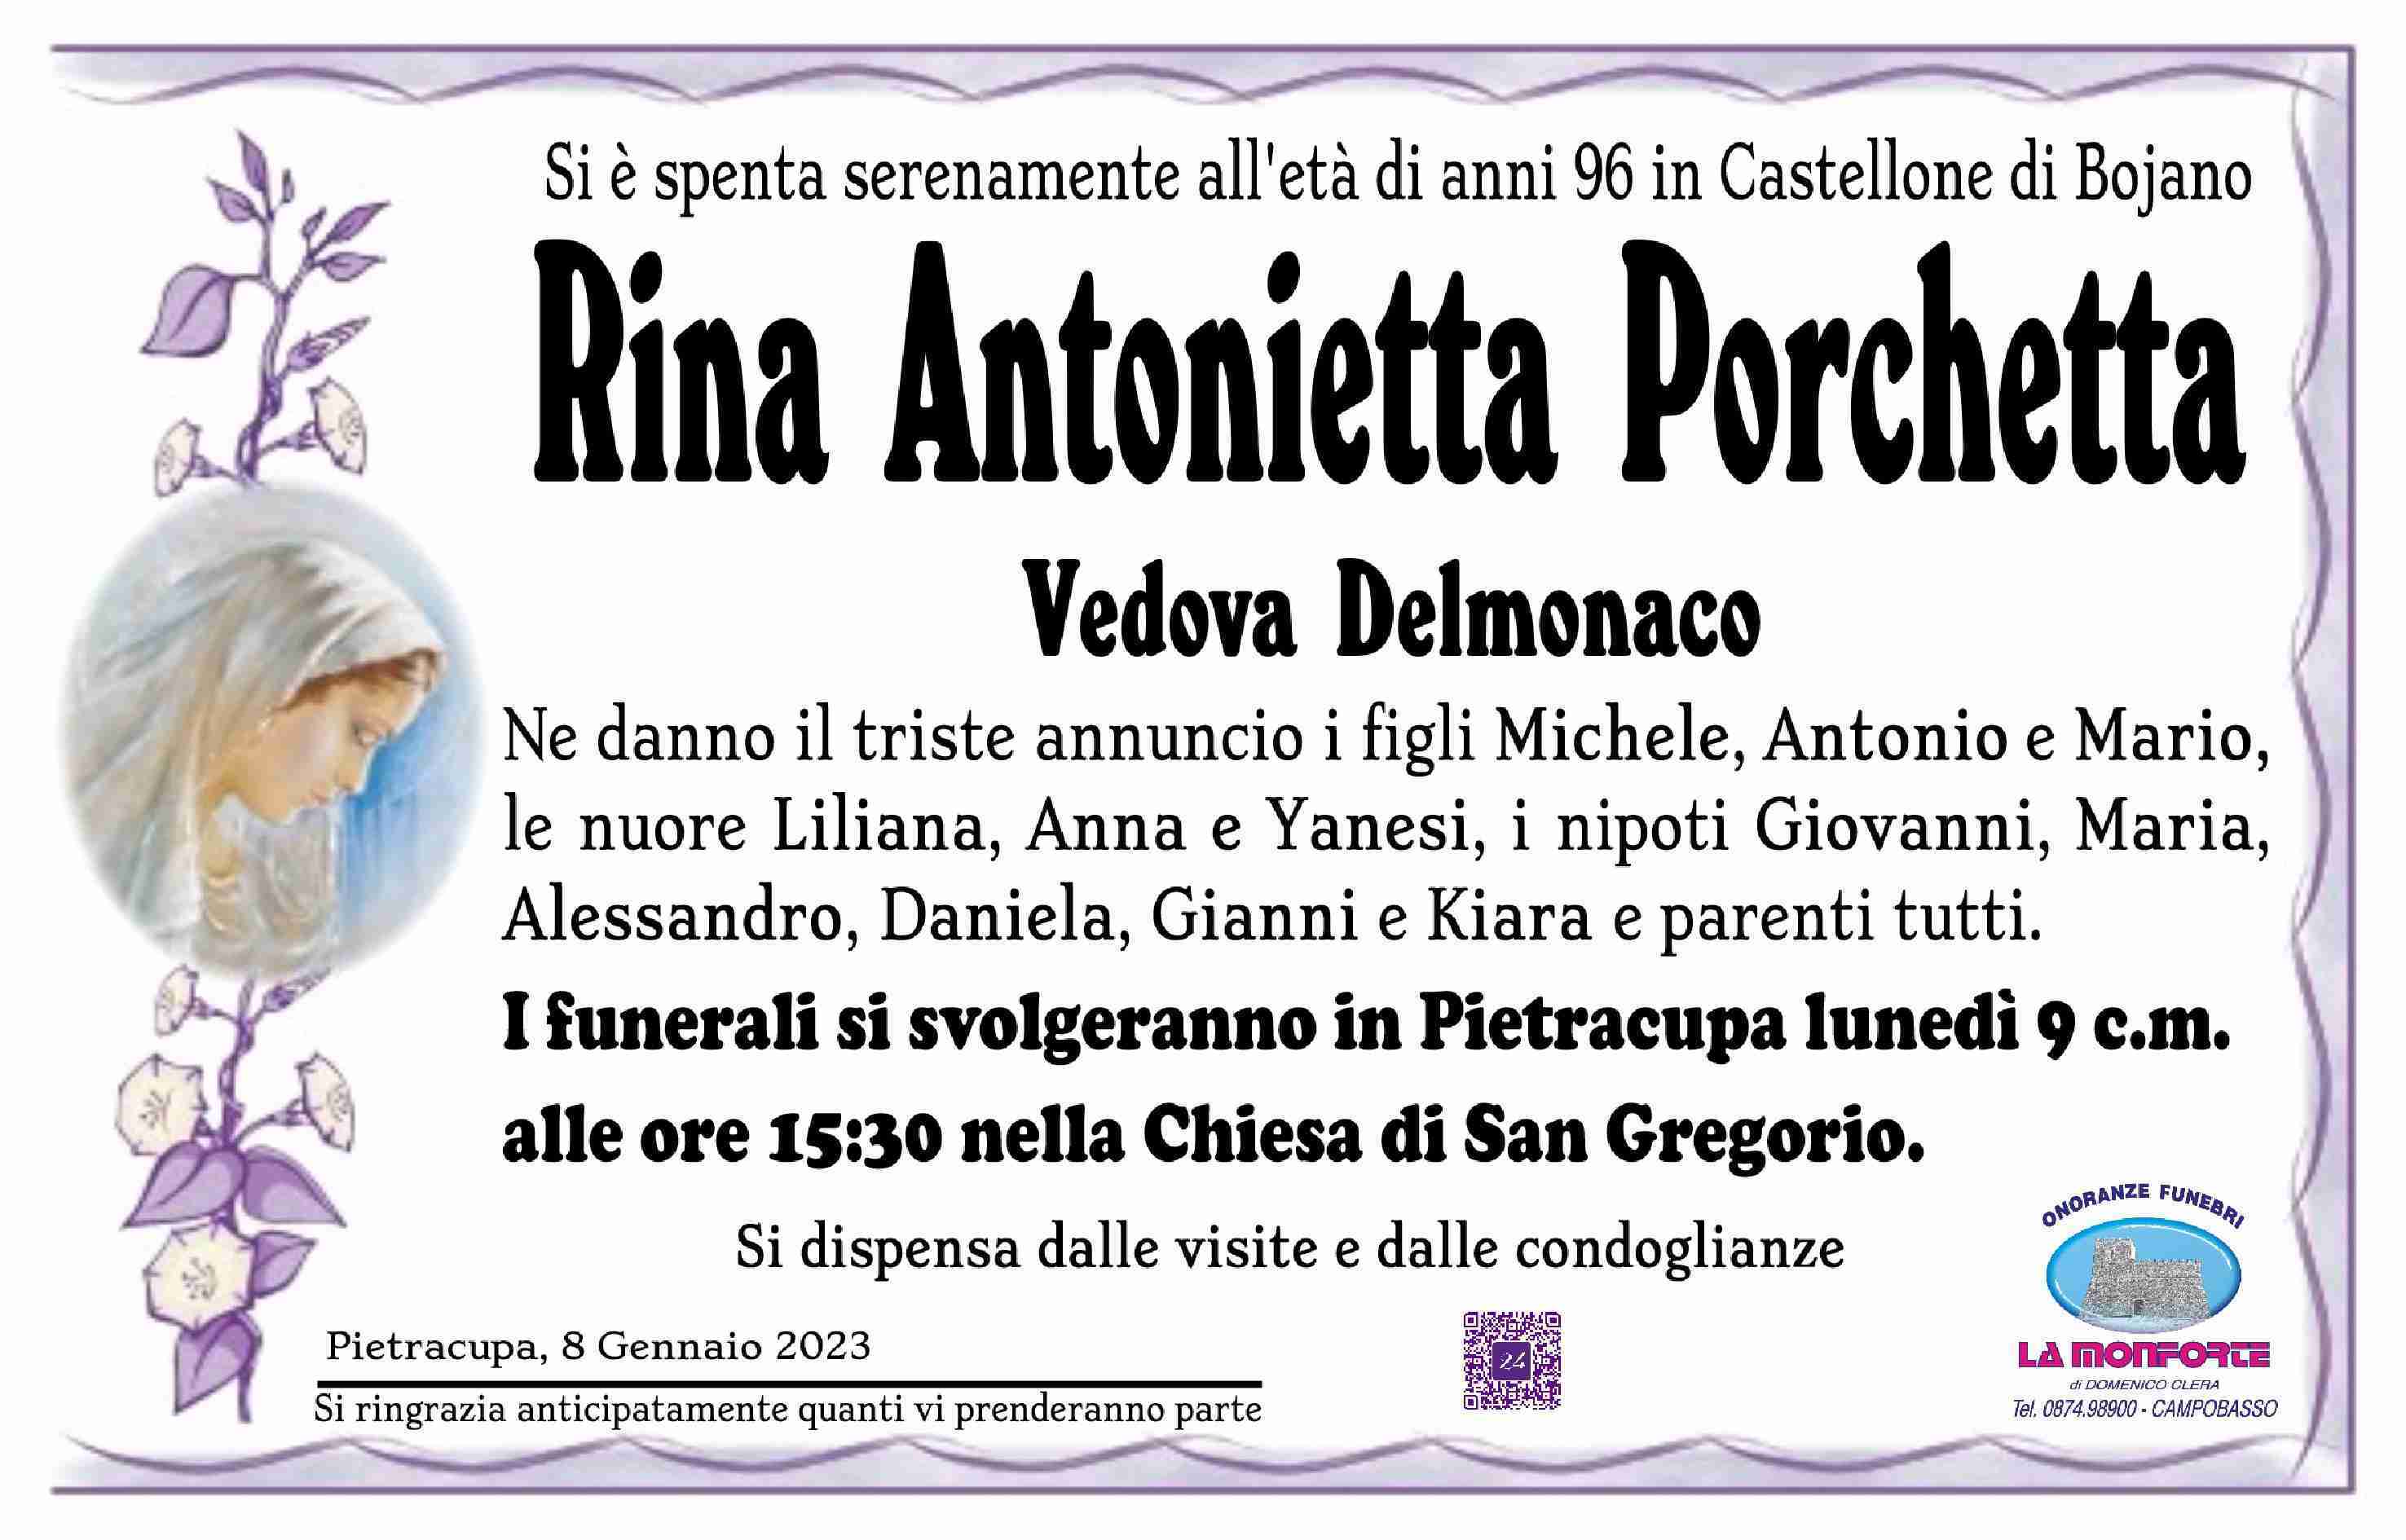 Rina Antonietta Porchetta